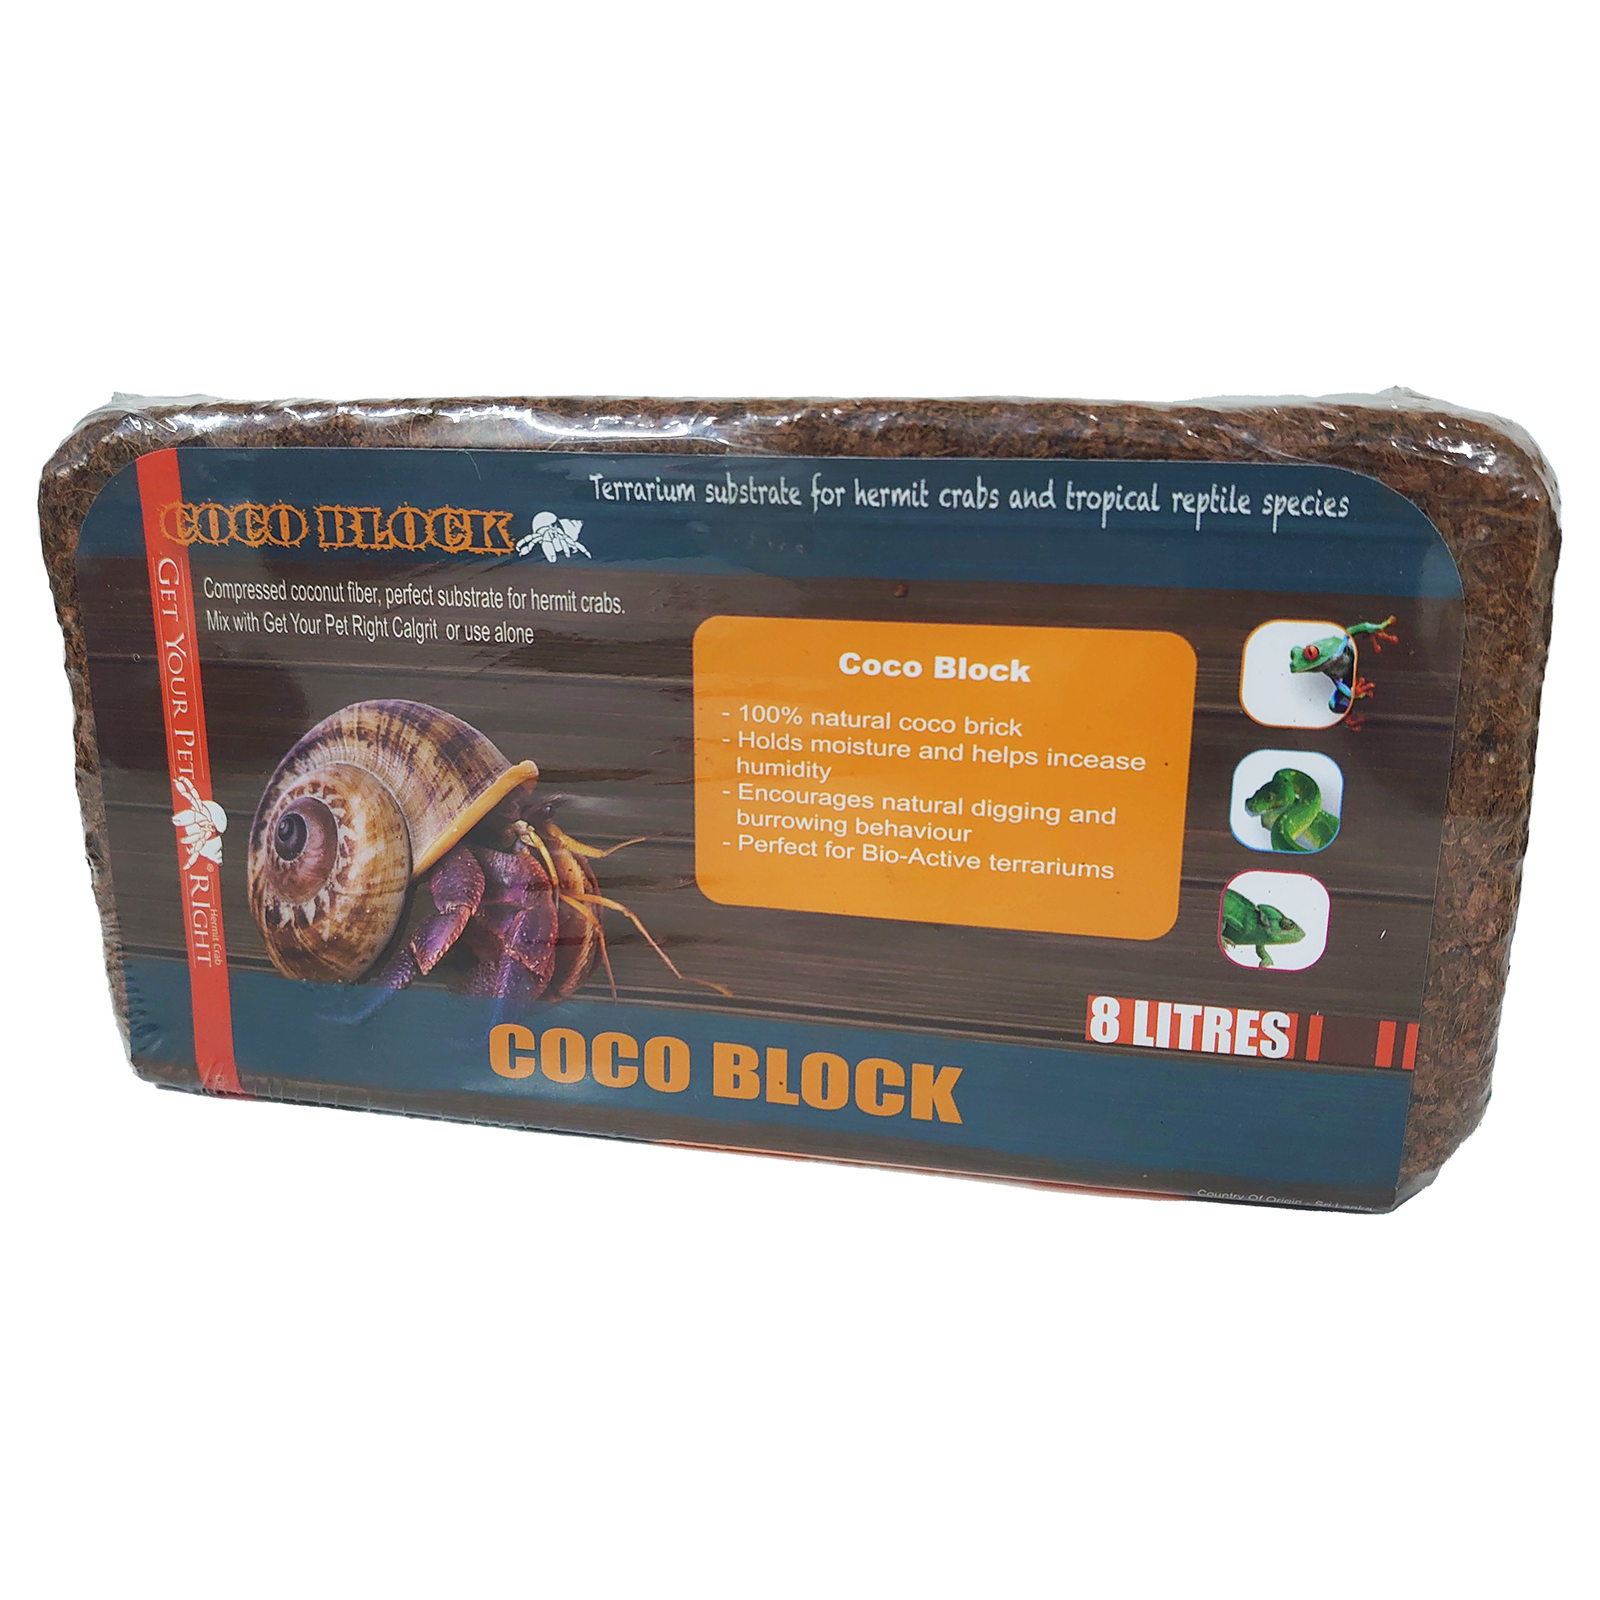 Get Your Pet Right Coconut Fibre Block